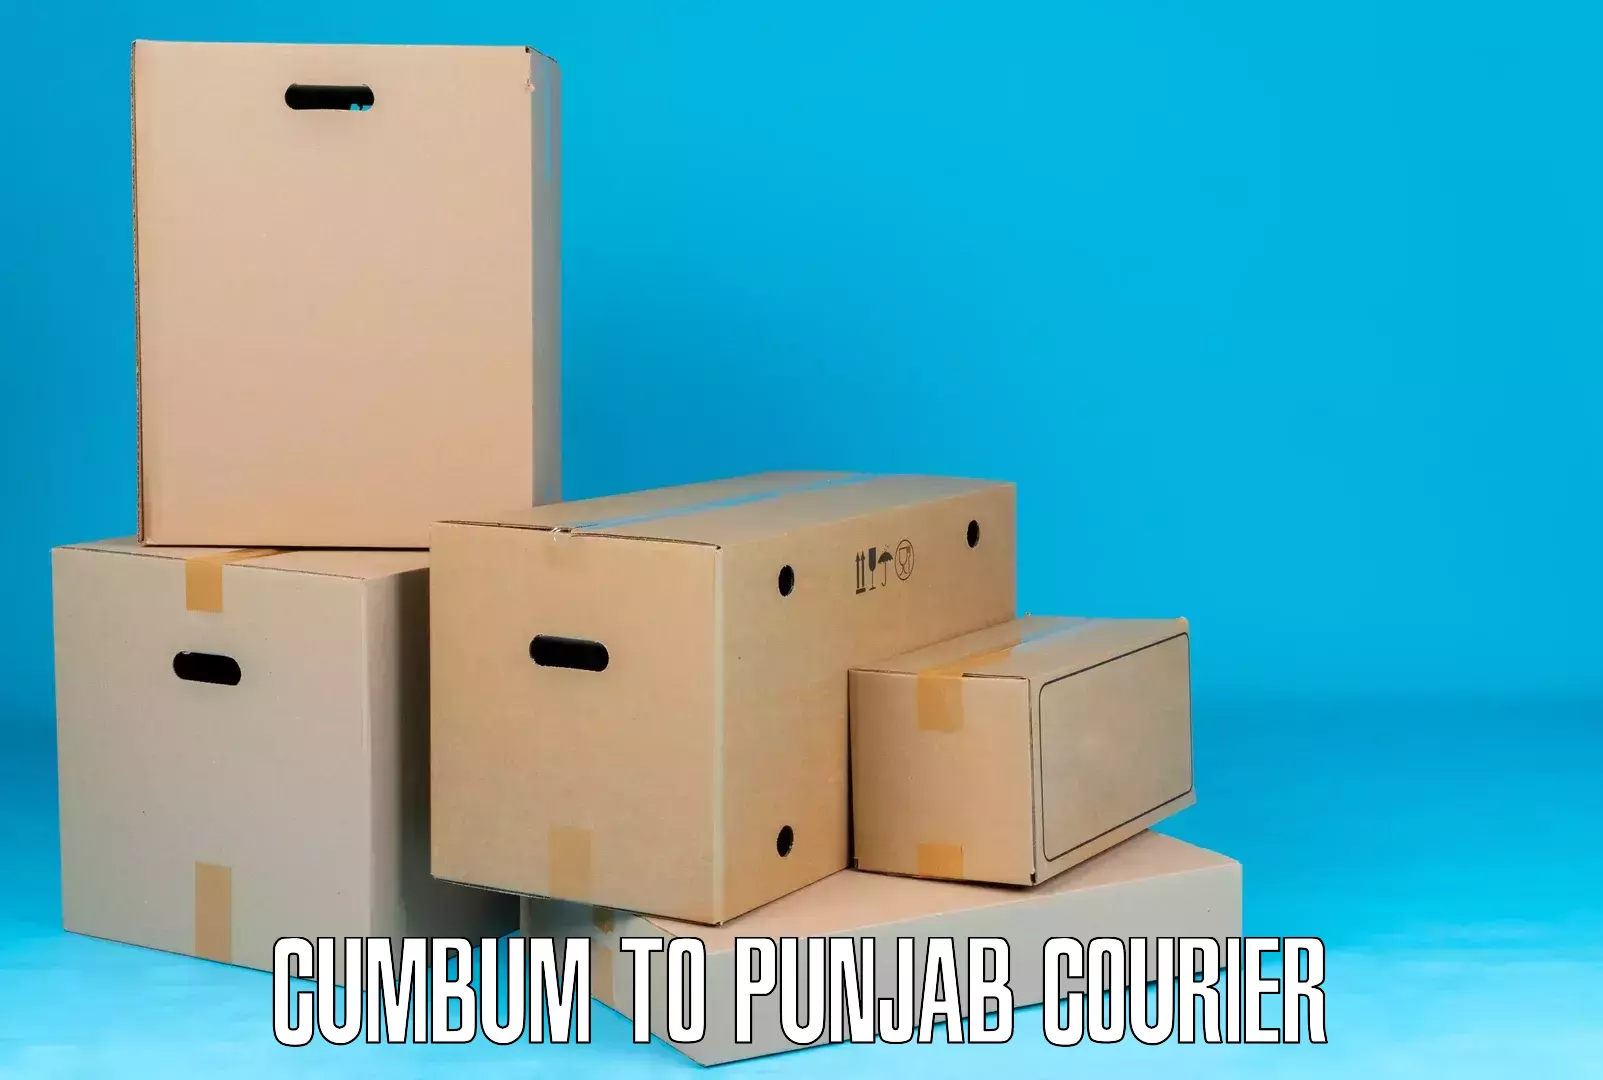 Personal courier services Cumbum to Garhshankar